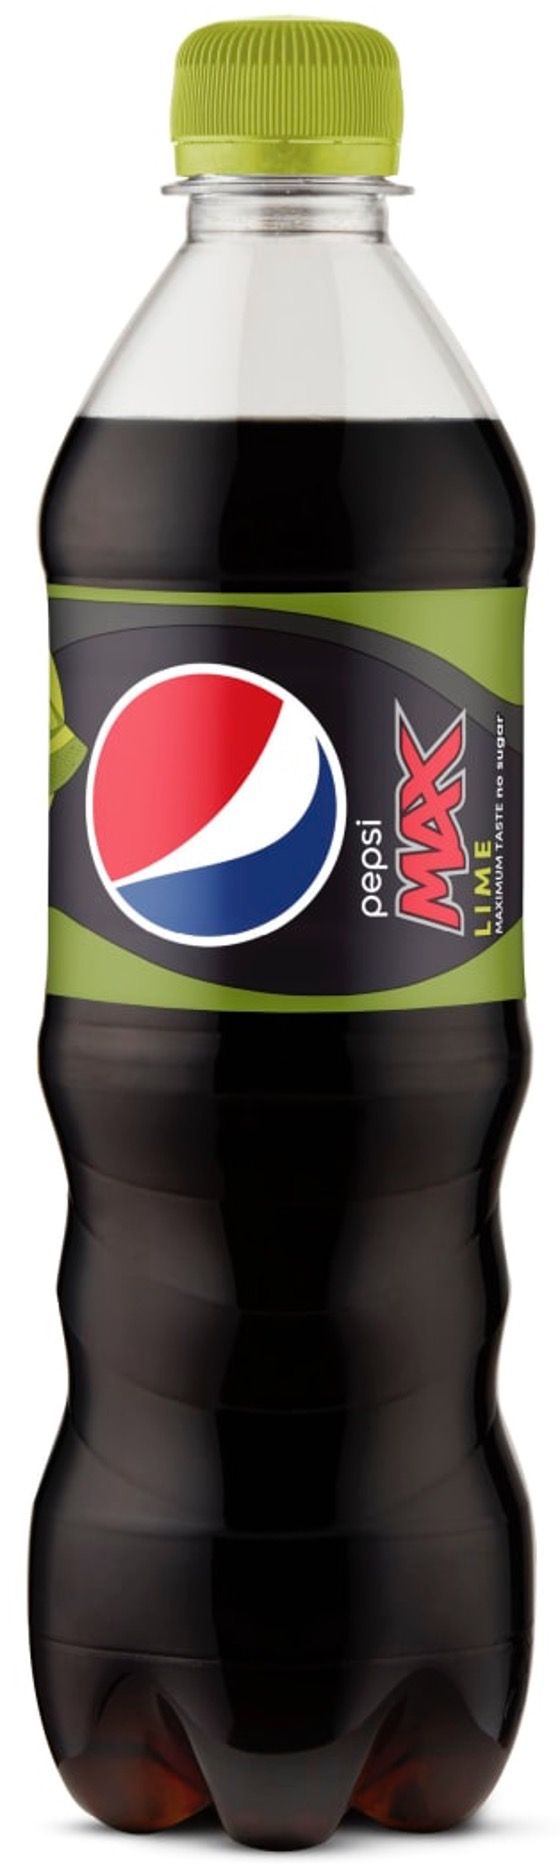 pepsi-max-plastic-bottle-50cl_cola-zero.com